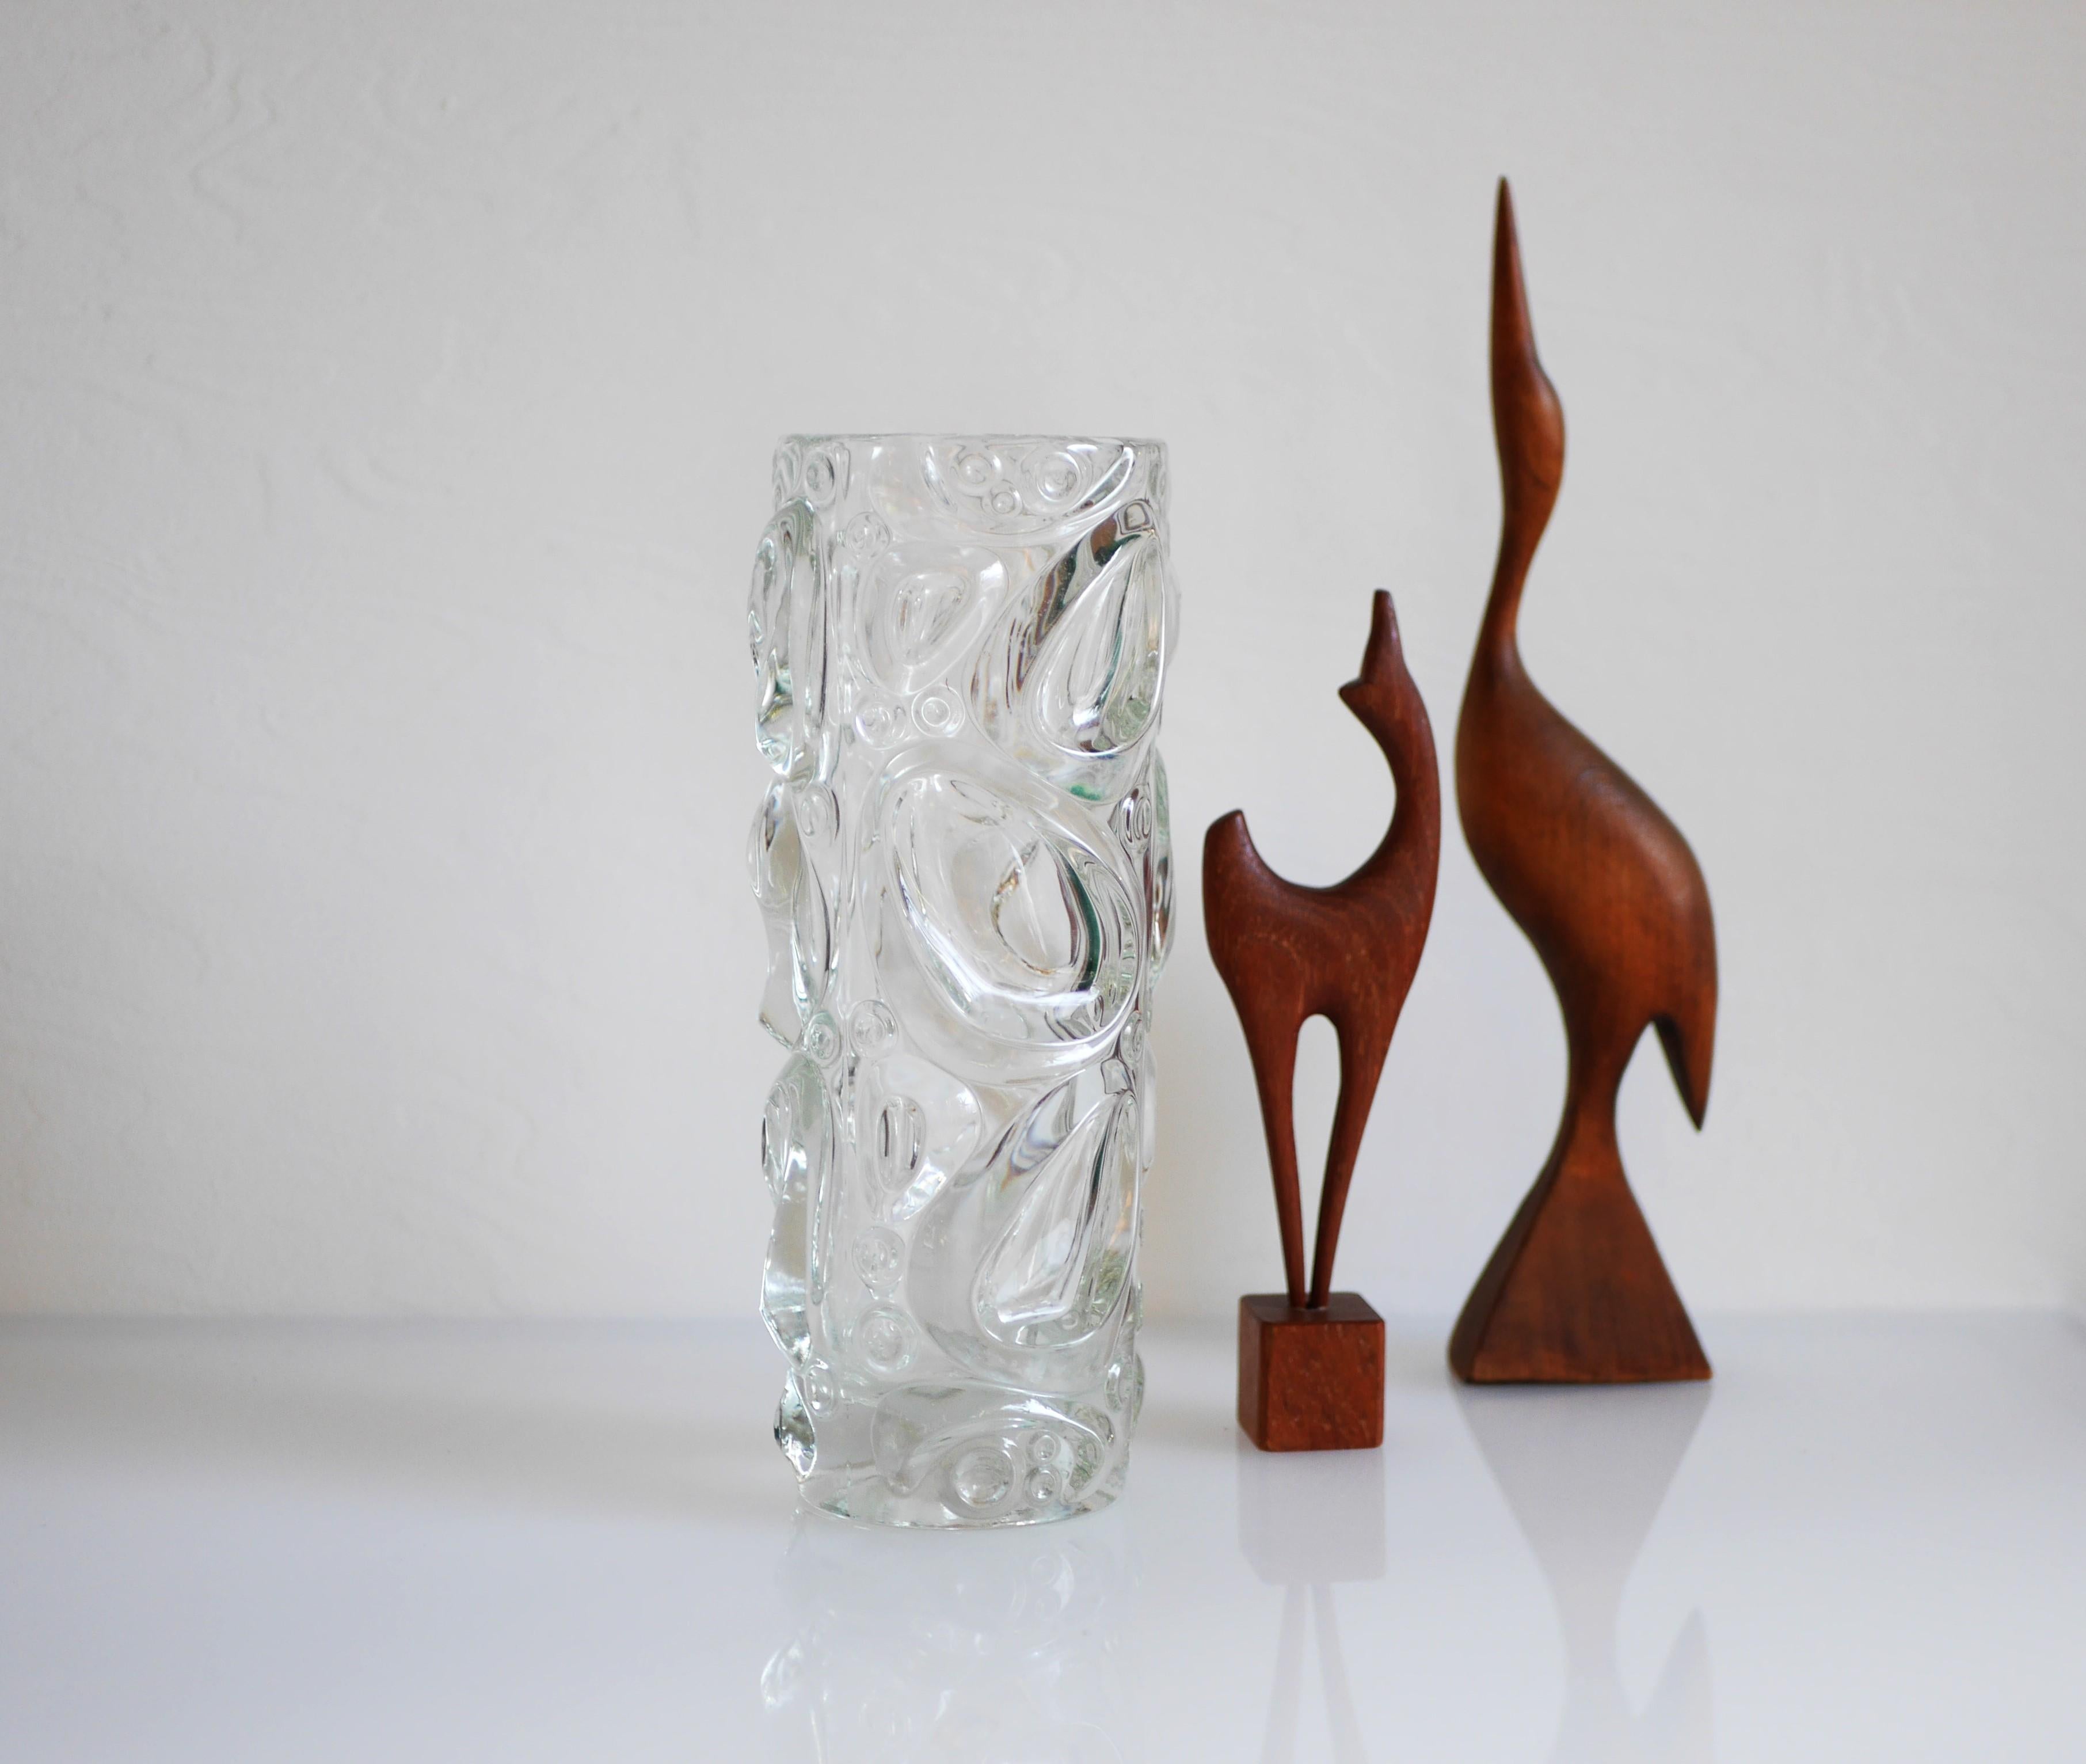 Vase en verre tchèque moderne du milieu du siècle conçu par Frantisek Peceny, Rosice travaille pour SkLO Union, 1972. Un vase en verre assez substantiel et rare, provenant de l'ancienne Tchécoslovaquie. Le design de ce vase est très organique dans